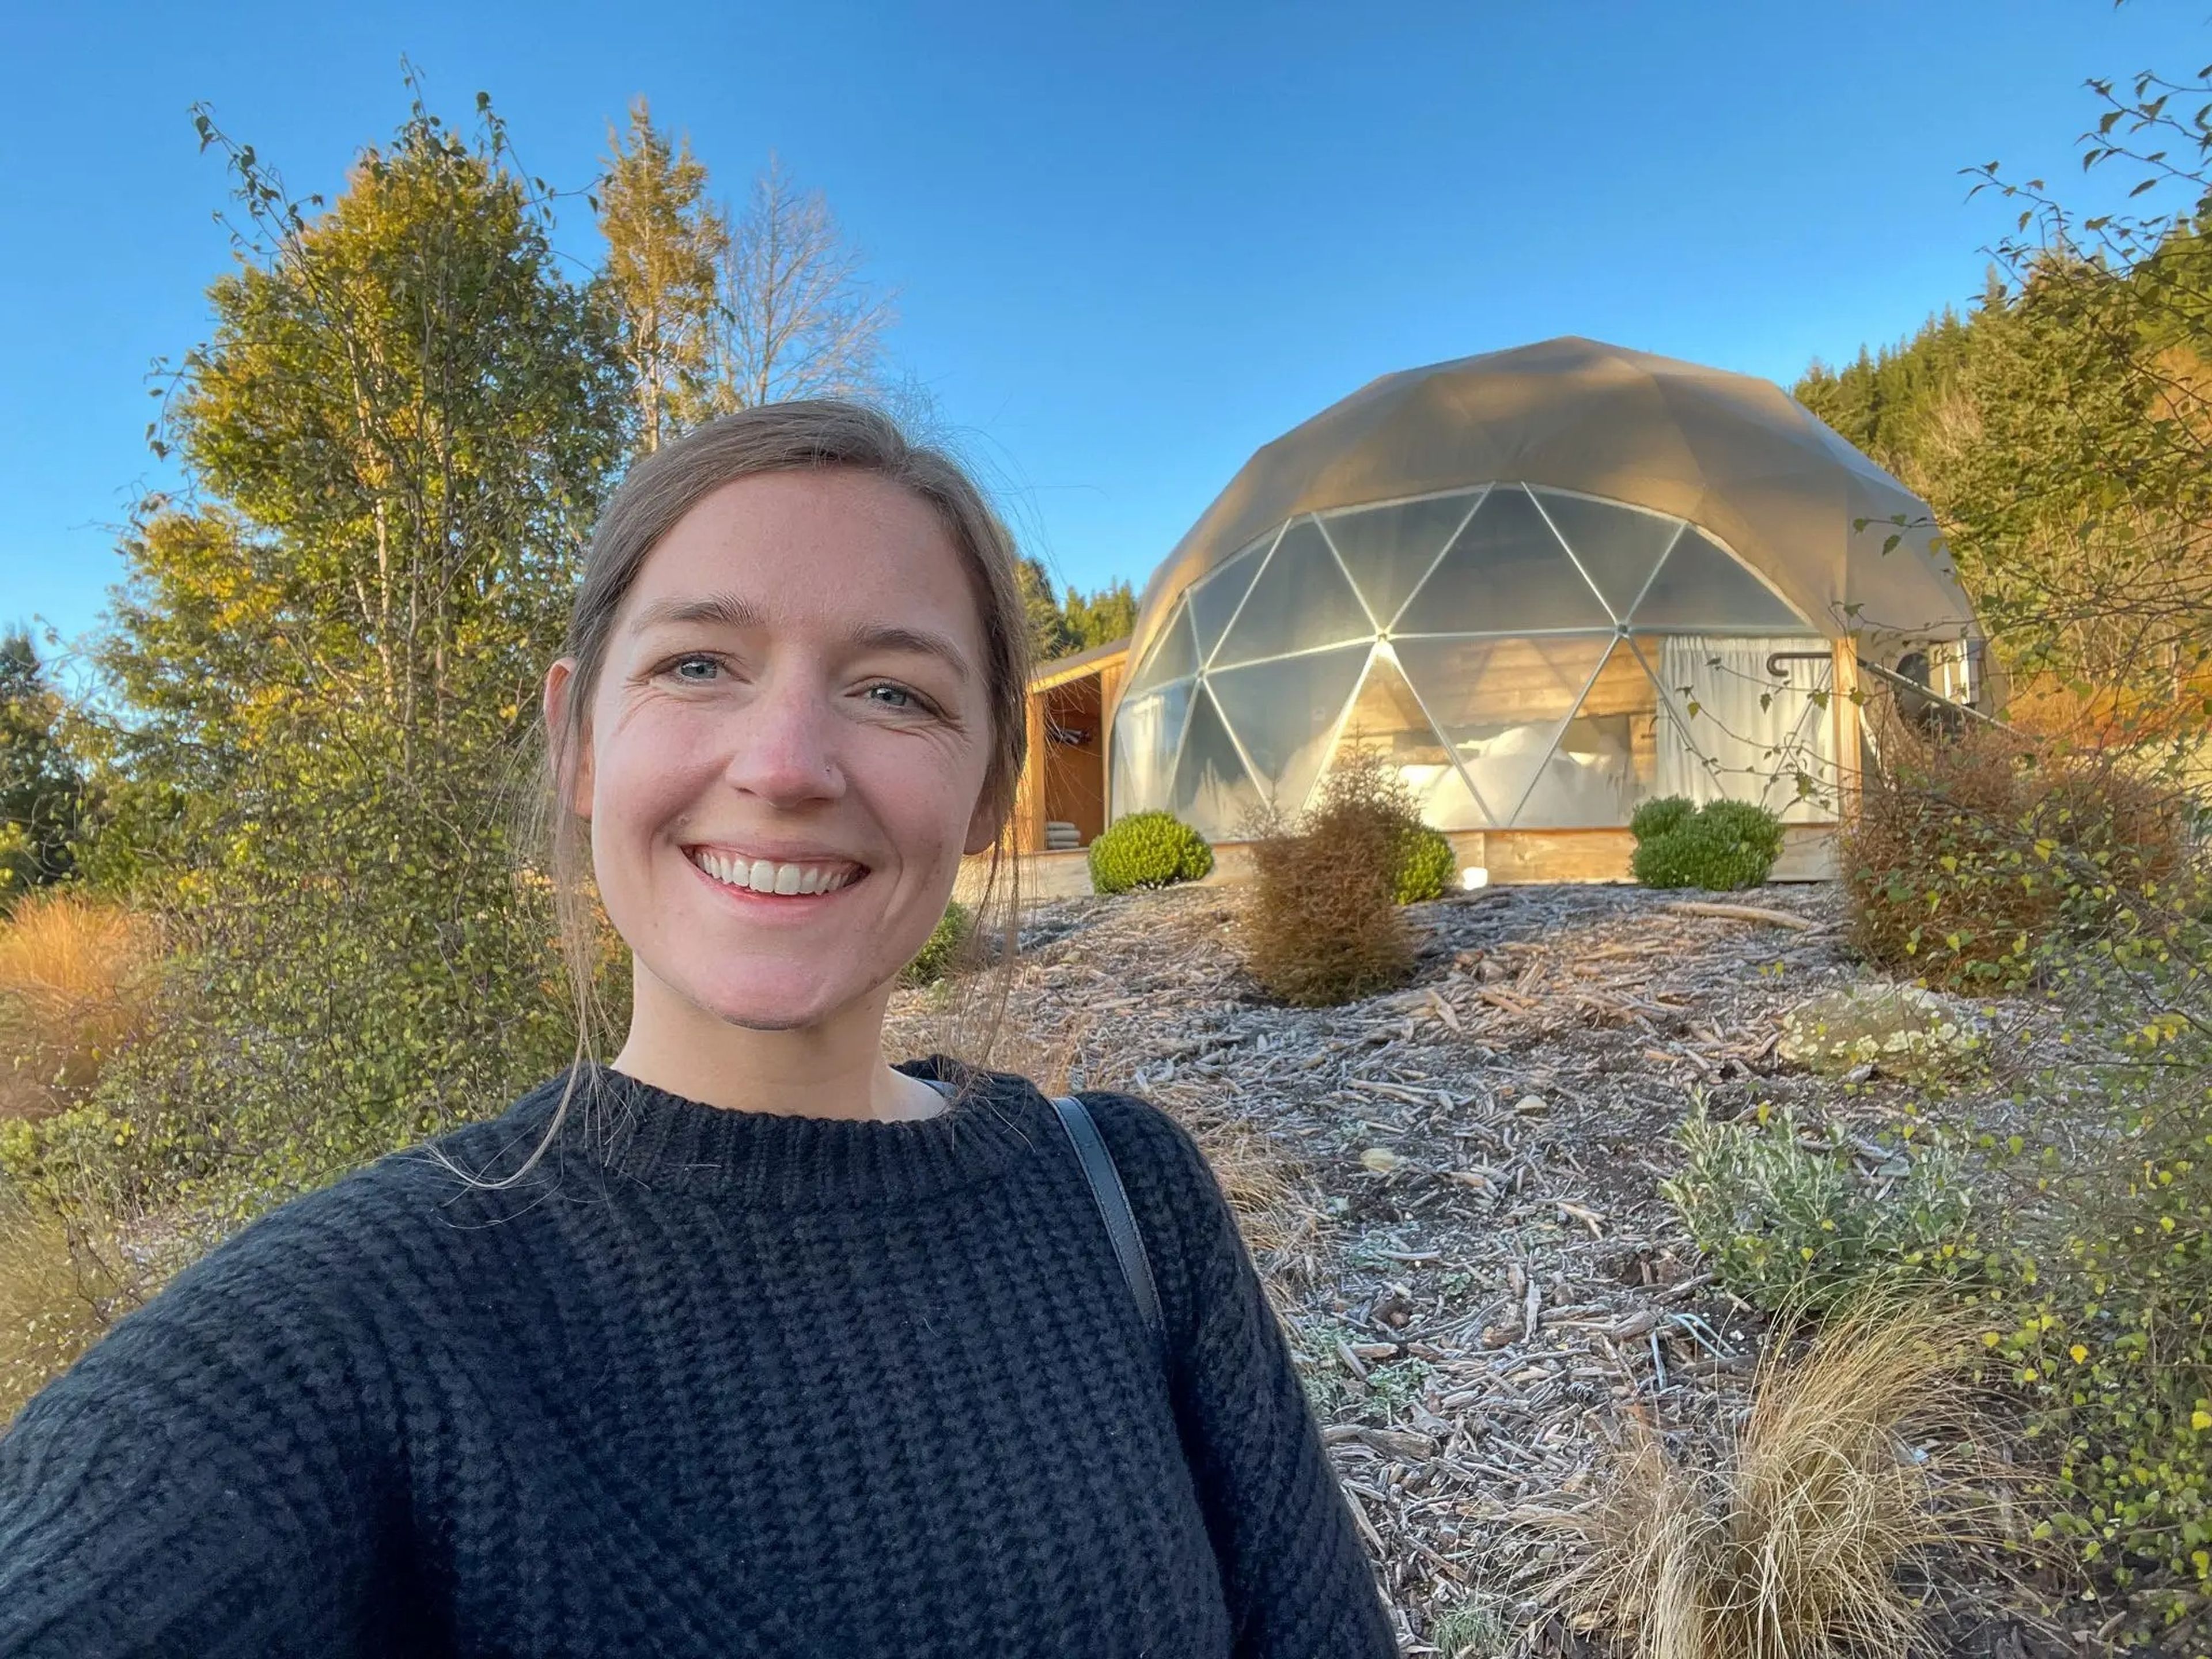 La autora de 'Business Insider' delante de la cúpula geodésica en la que se alojó durante su viaje a Nueva Zelanda.